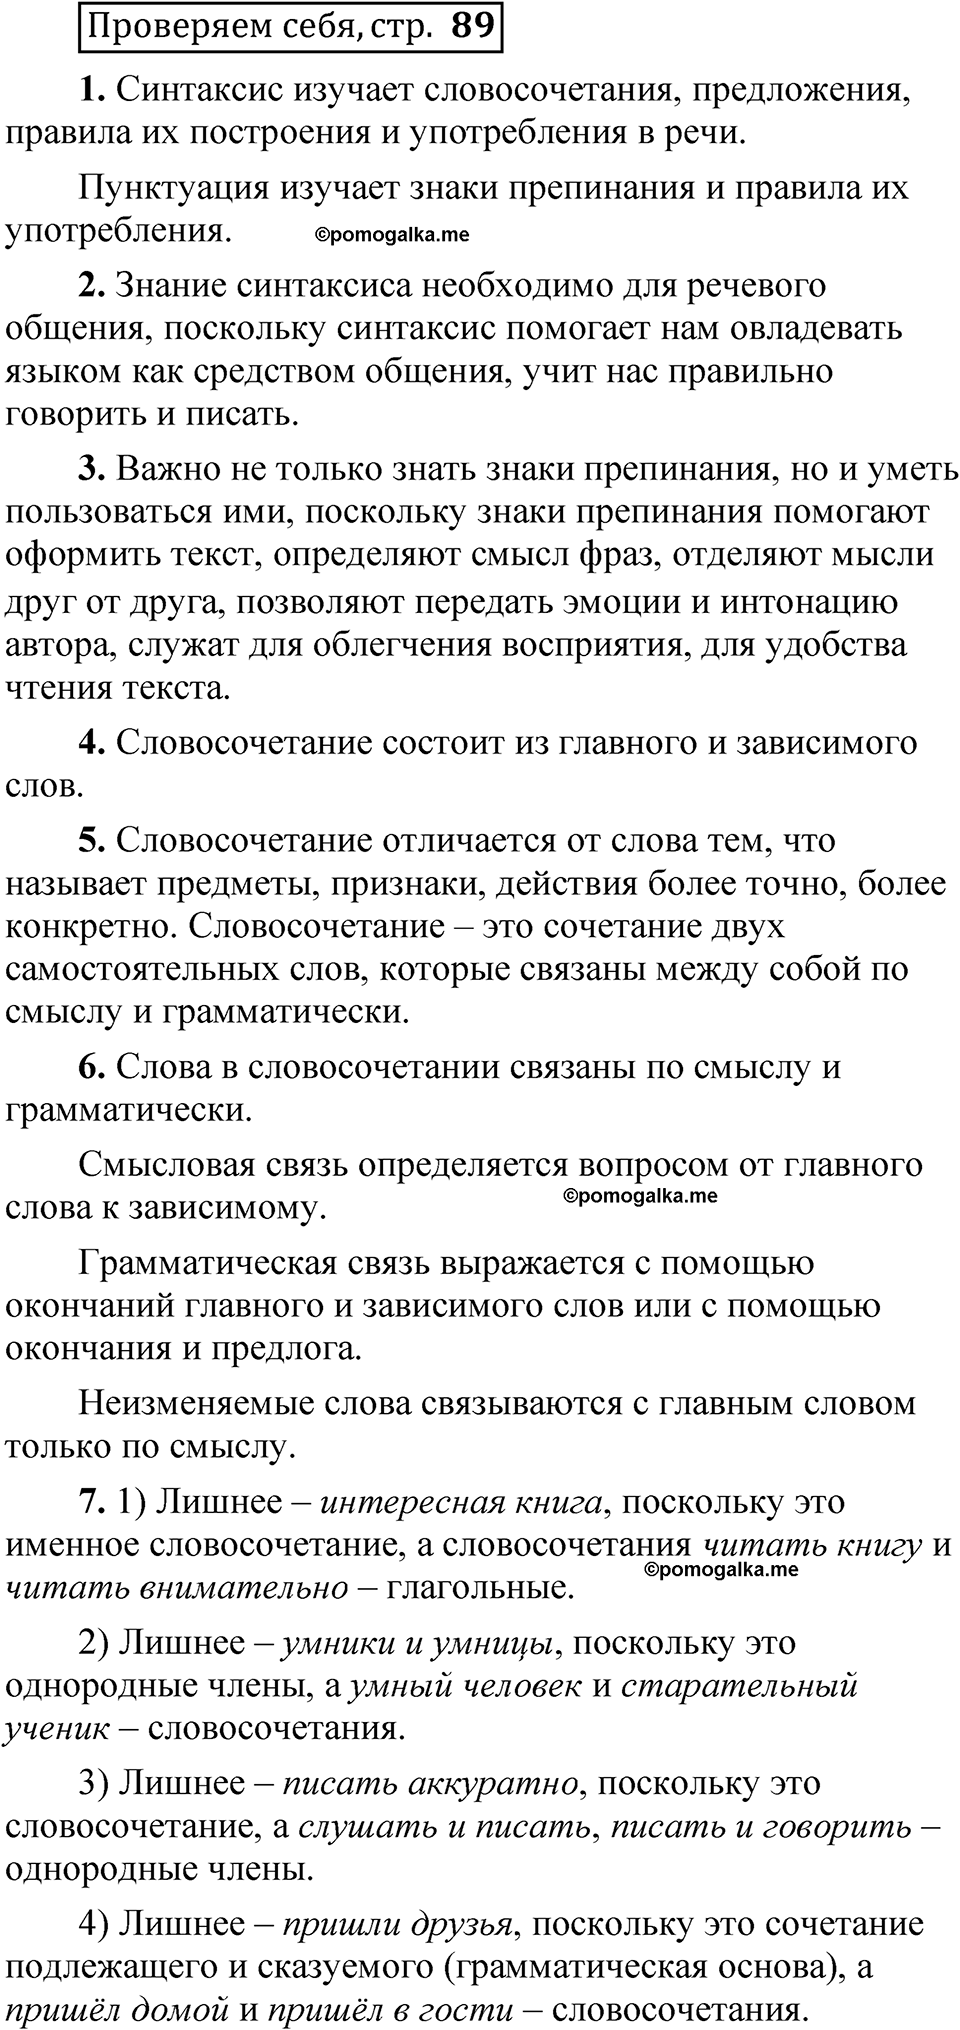 страница 89 Проверяем себя русский язык 5 класс Быстрова, Кибирева 1 часть 2021 год